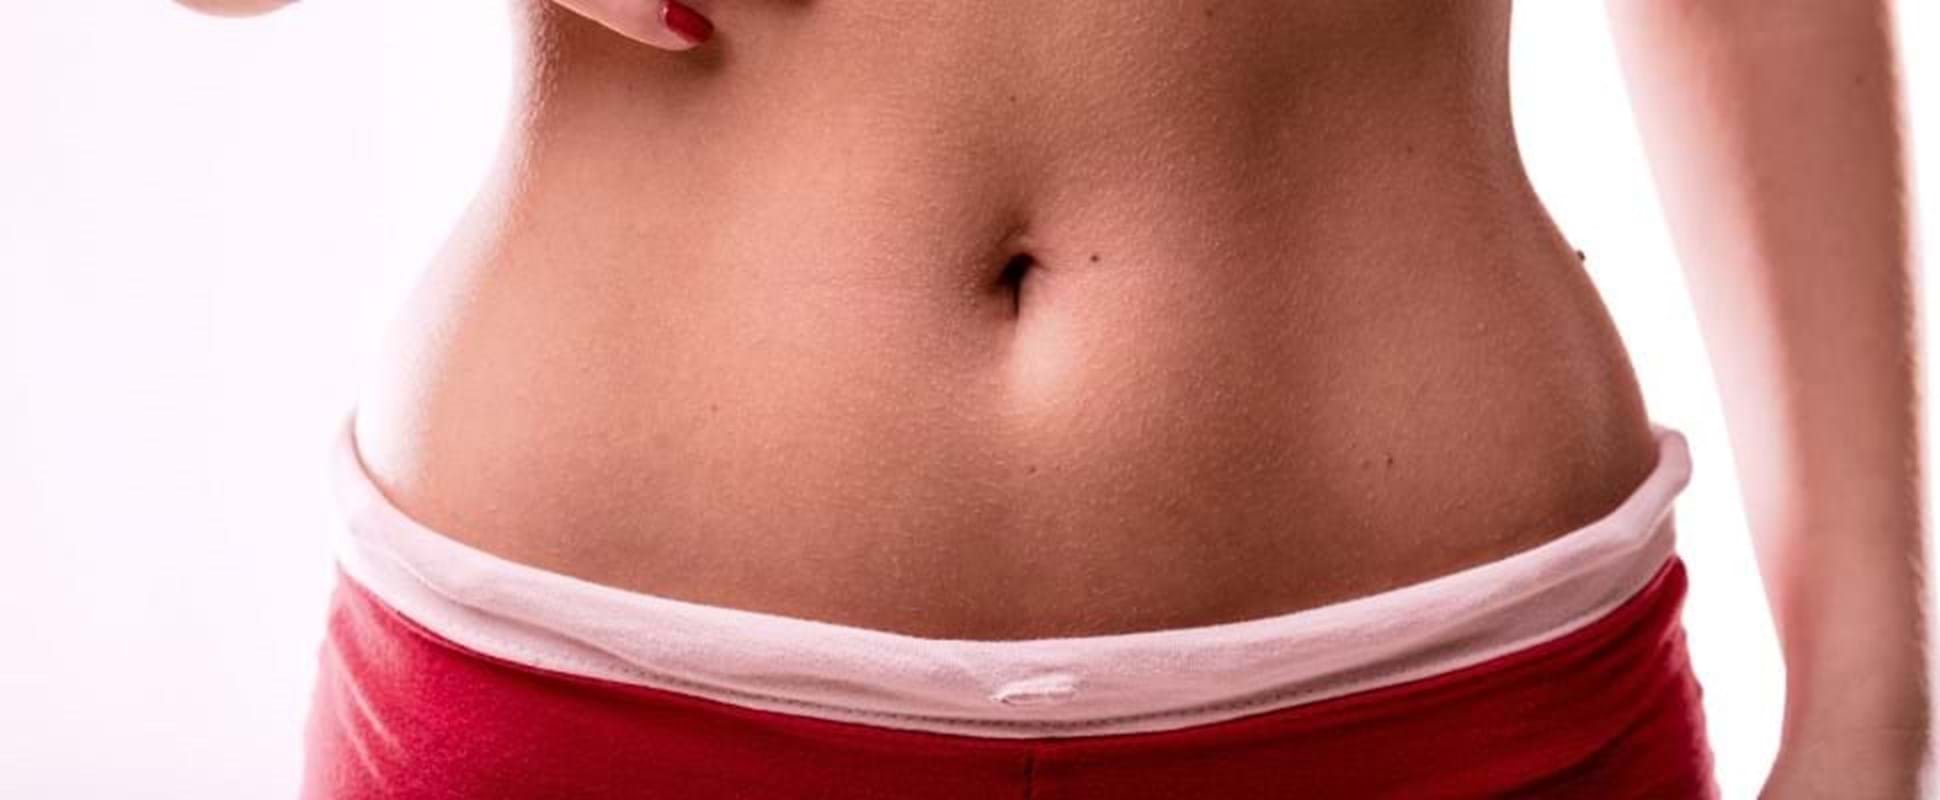 5 cosas que debes saber acerca de una reducción de abdomen